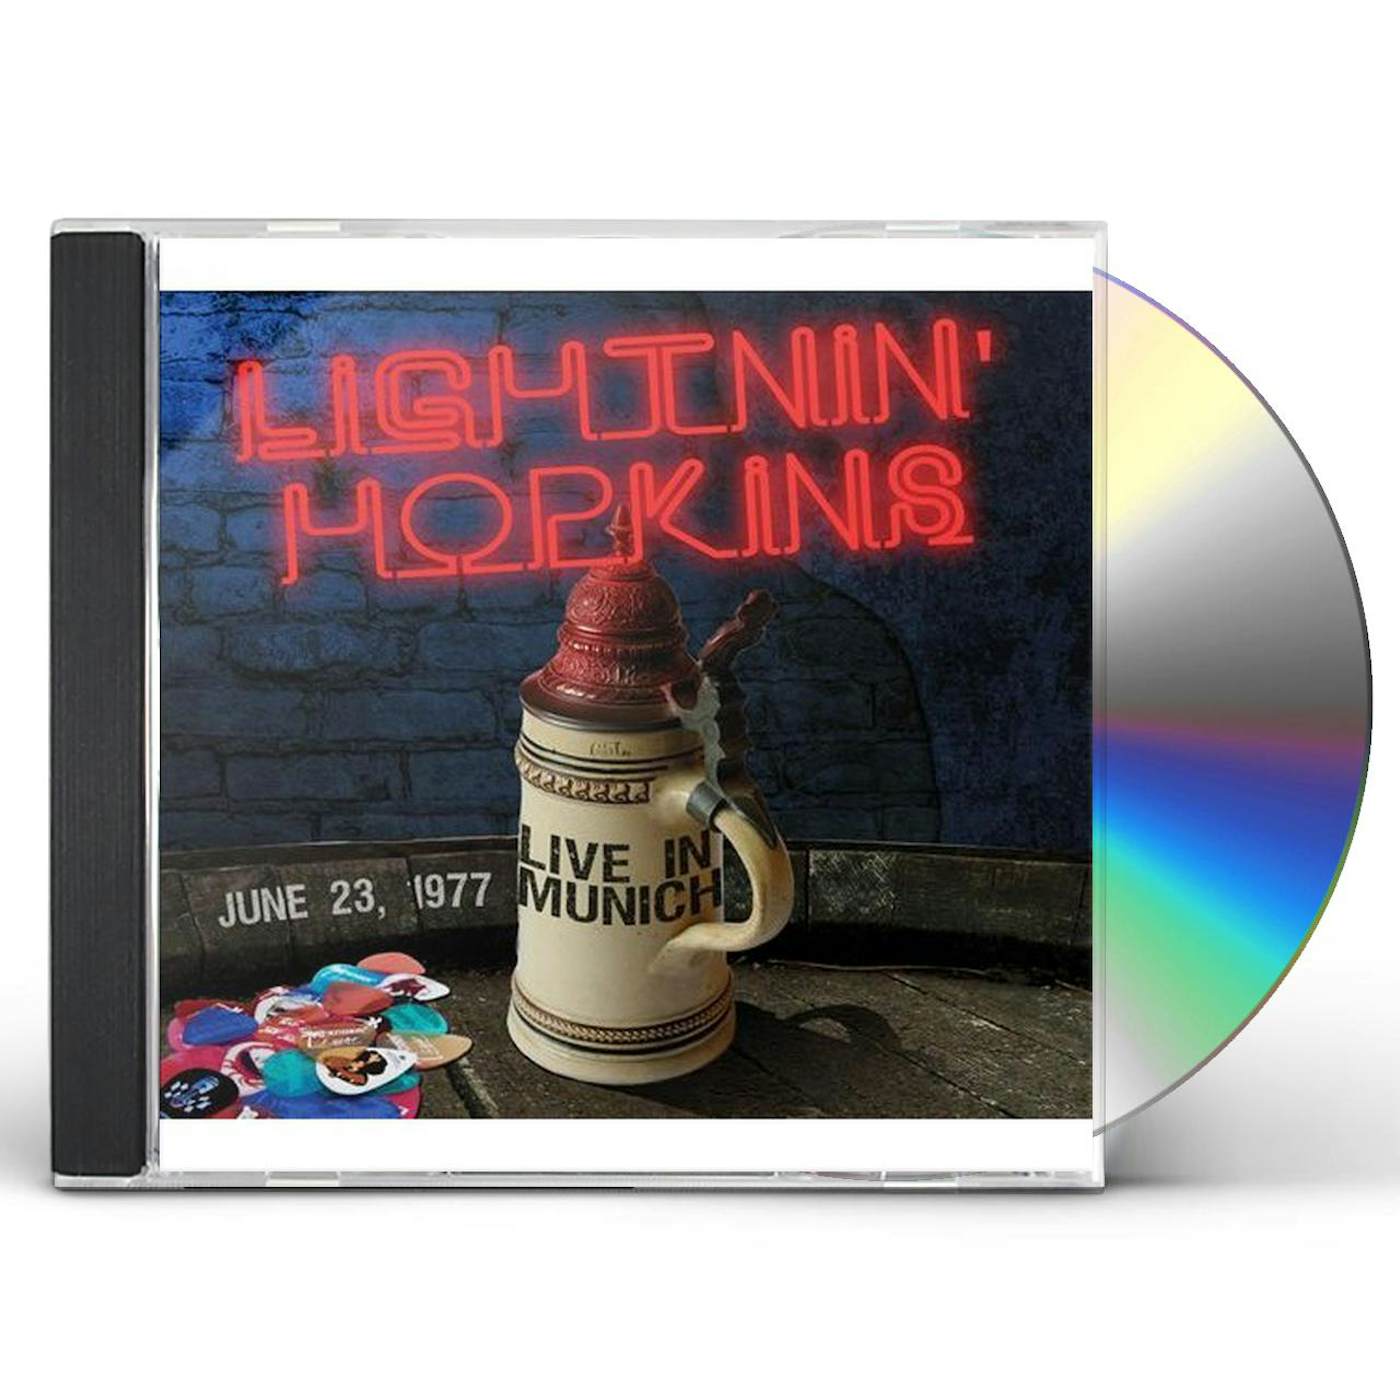 Lightnin' Hopkins BLUES IN MUNICH 1977 CD